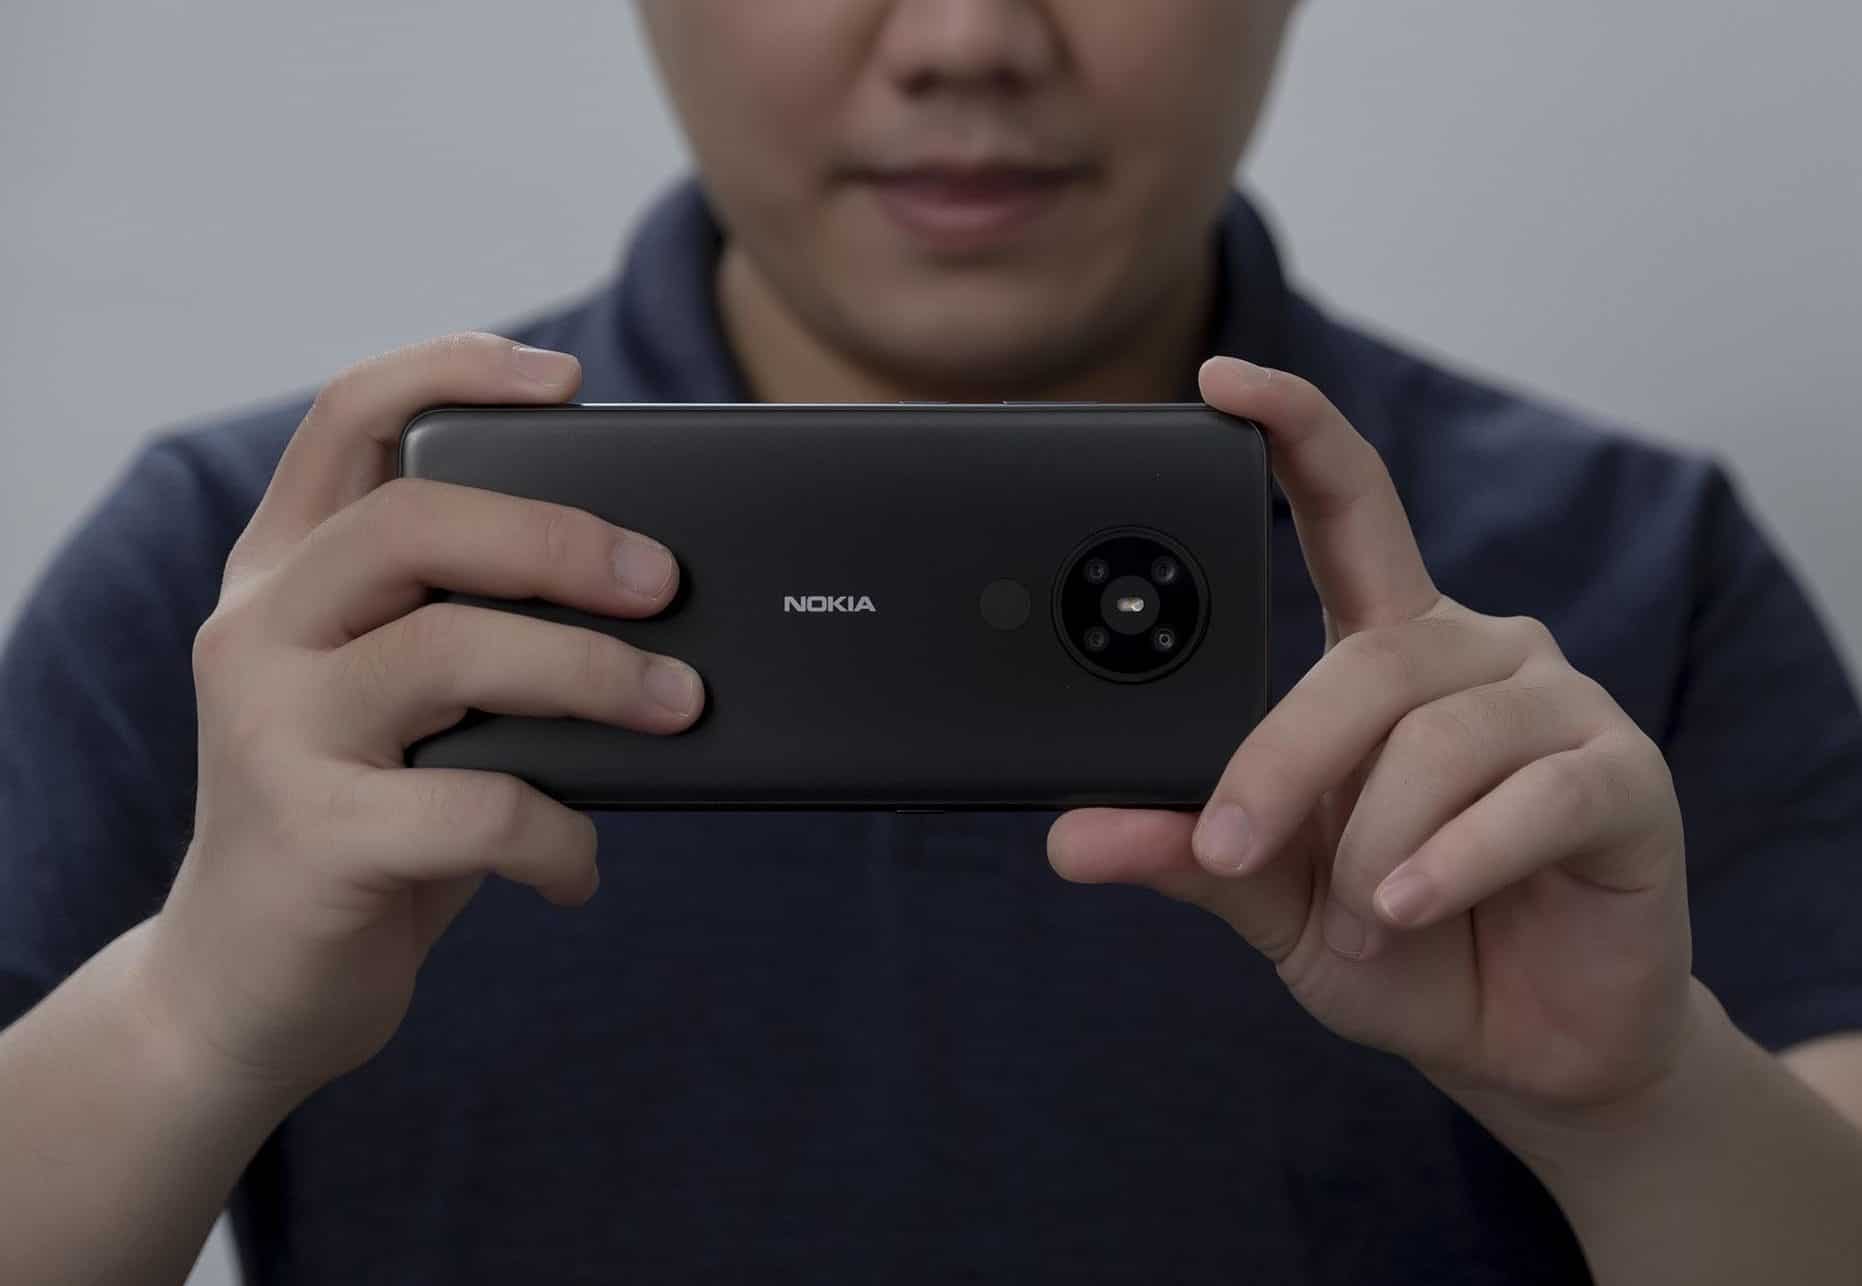 Đánh giá bộ tứ camera Nokia 5.3: Thống lĩnh phân khúc với chất lượng ảnh vượt trội và chế độ chụp đa dạng